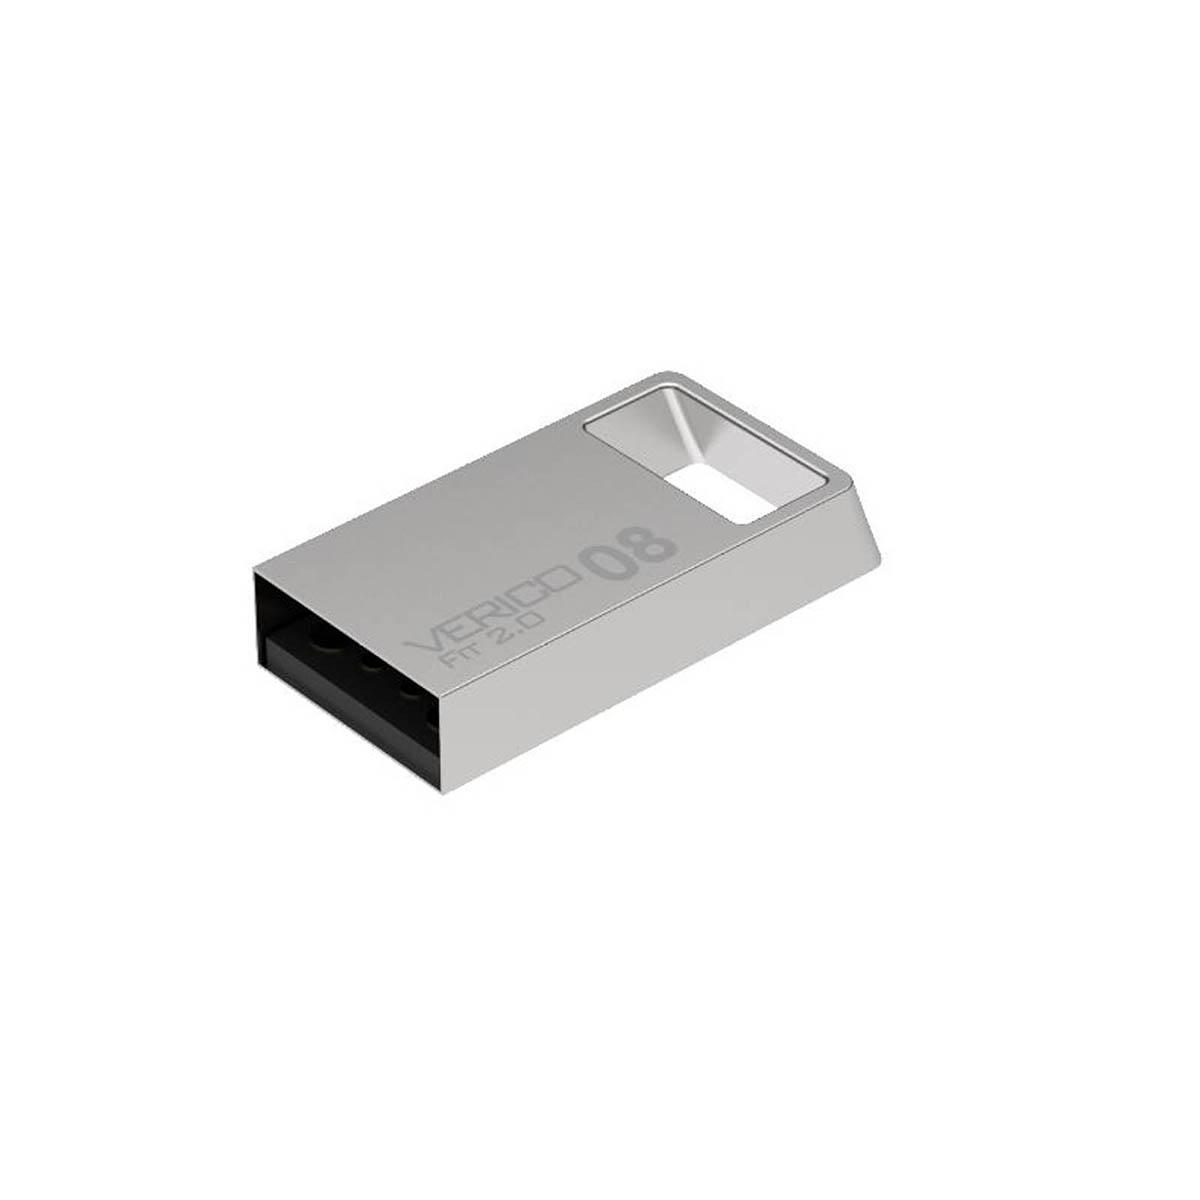 MEMORIA USB VERICO (1UDOV-RLSR83-NN) 8GB FIT VR23, SILVER - VERICO